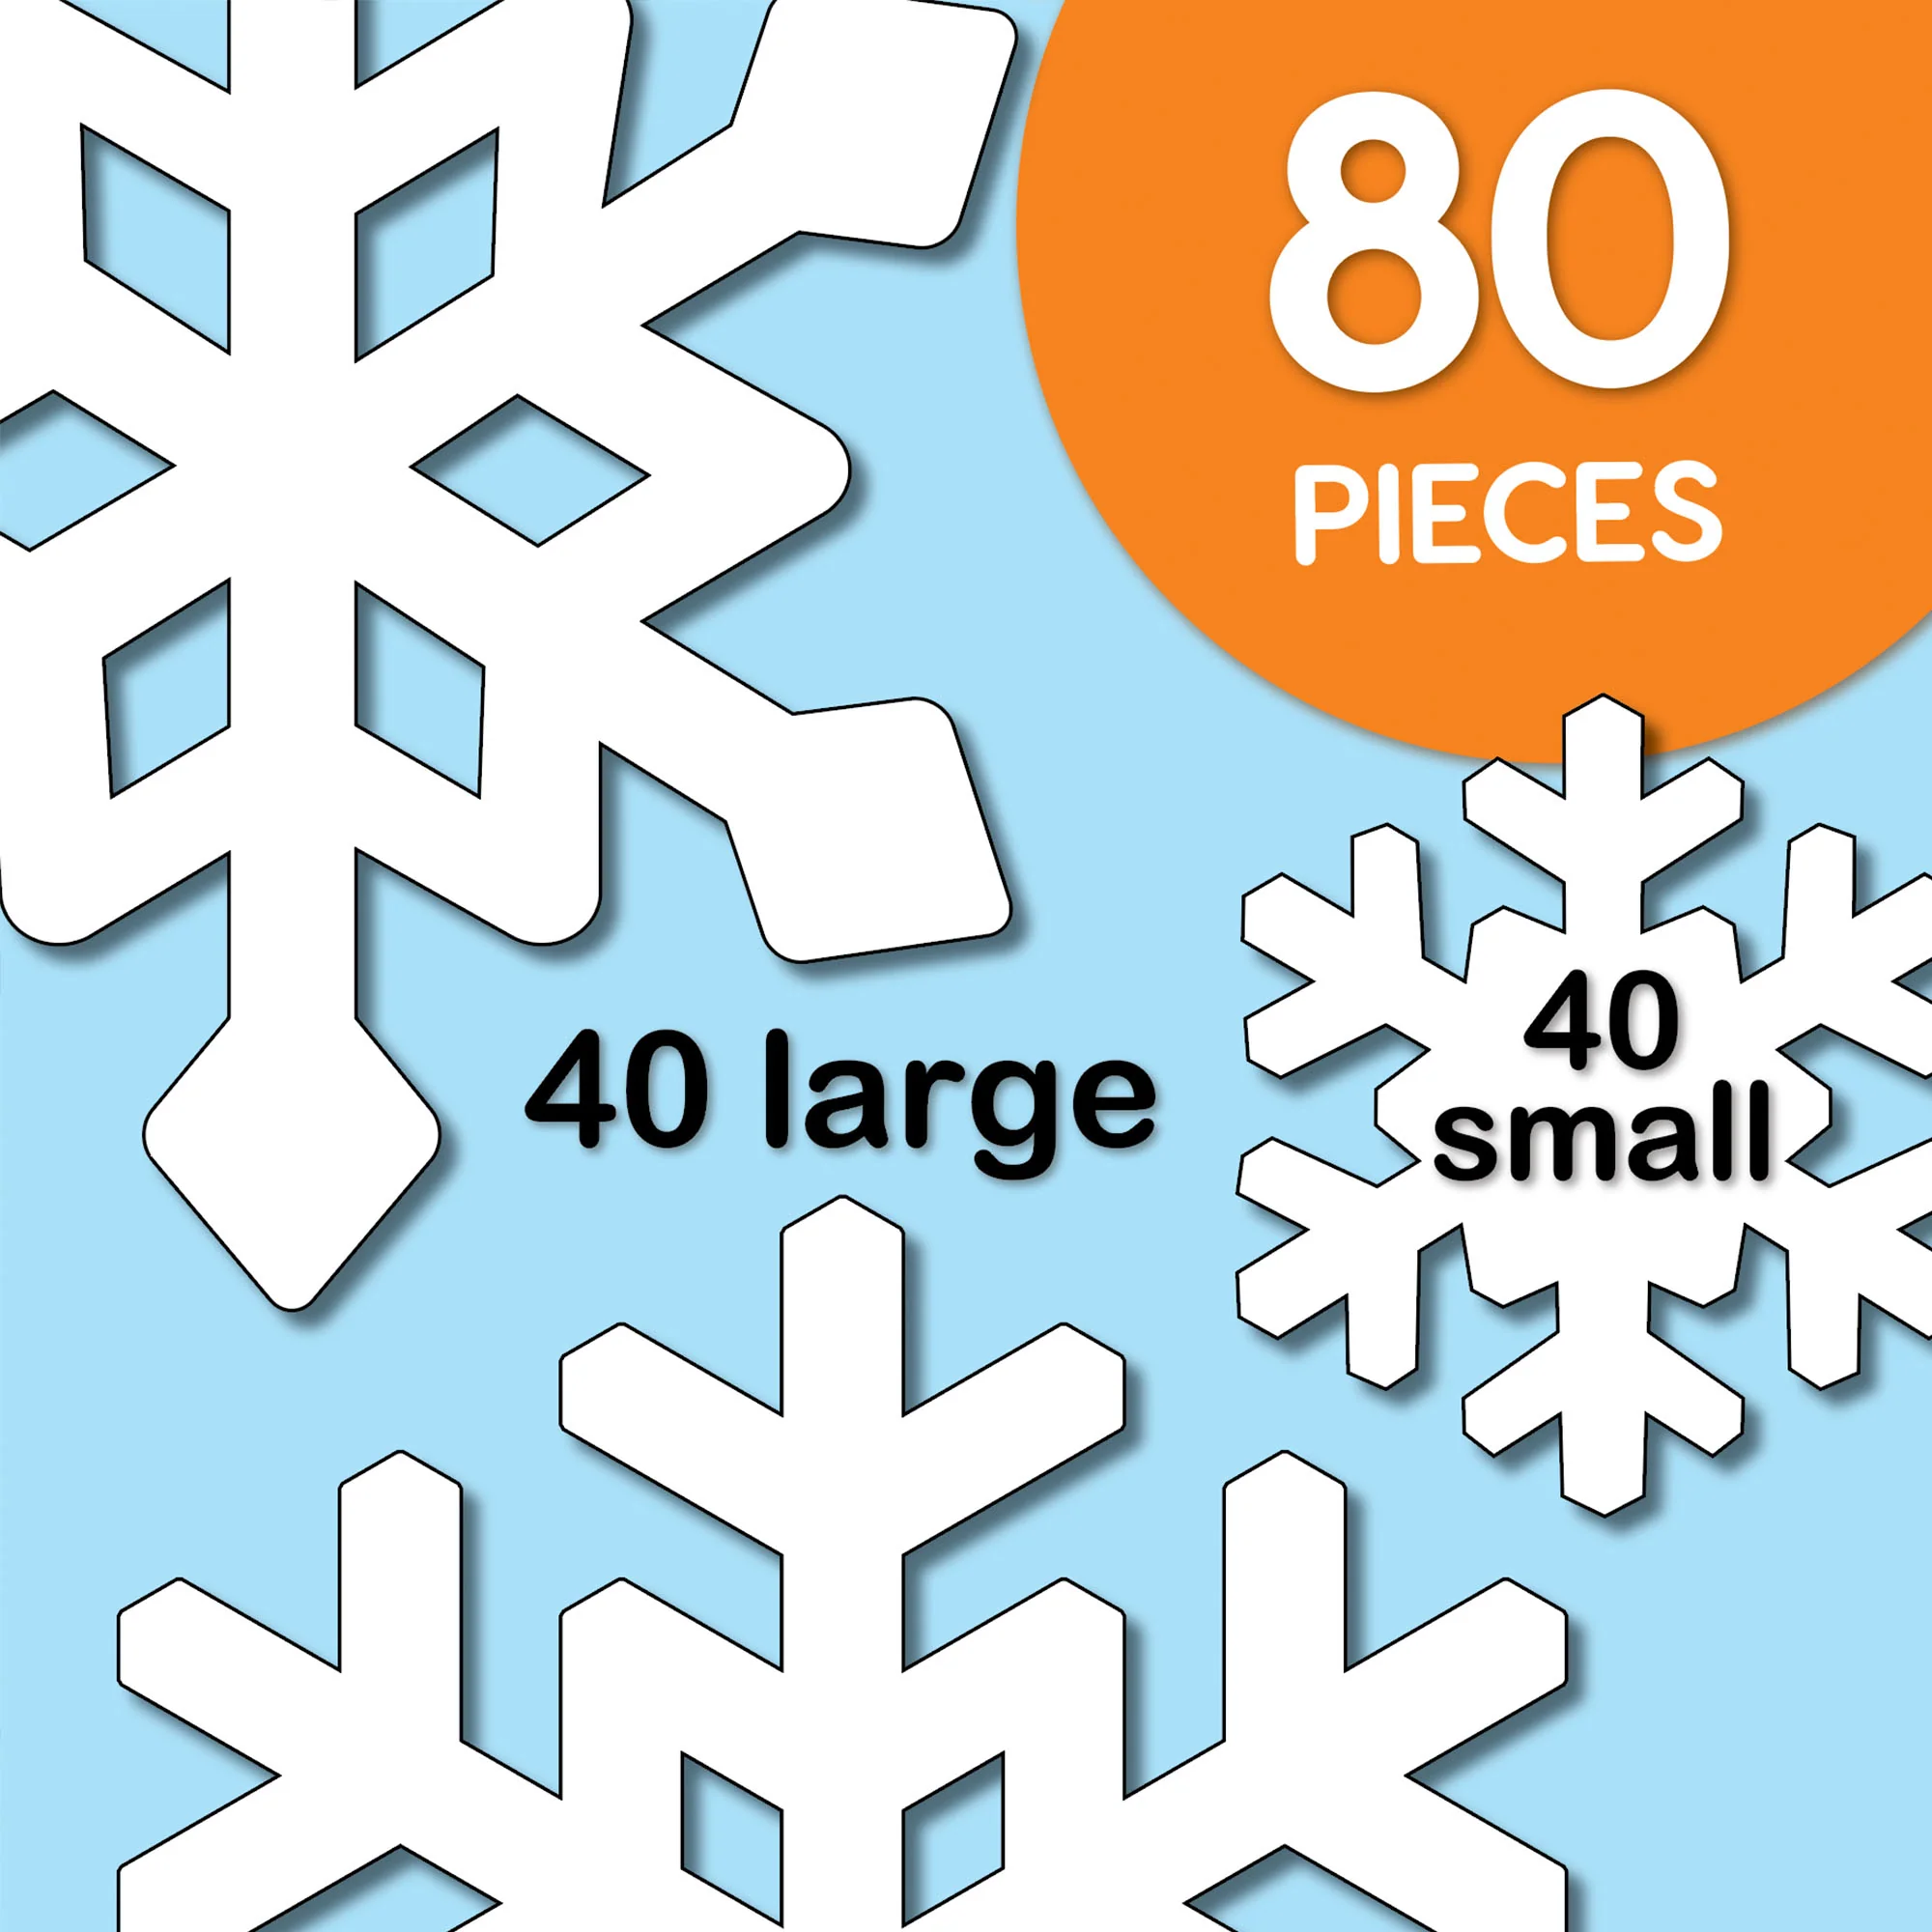 24 Wholesale Snowflake Cutouts - at 